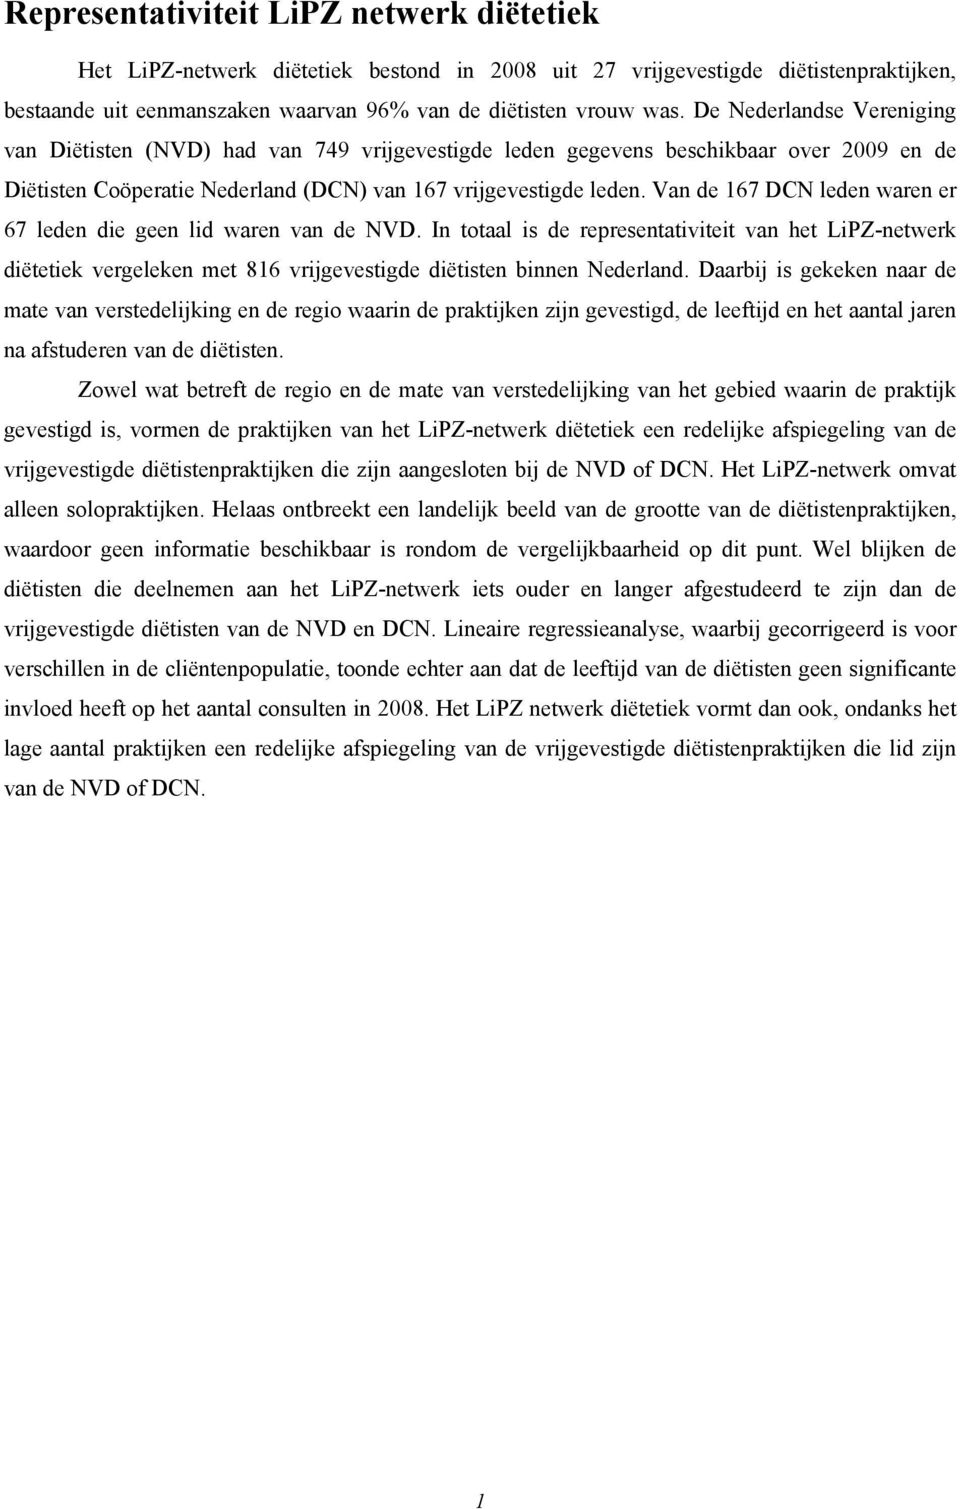 Van de 167 DCN leden waren er 67 leden die geen lid waren van de NVD. In totaal is de representativiteit van het LiPZ-netwerk diëtetiek vergeleken met 816 vrijgevestigde diëtisten binnen Nederland.